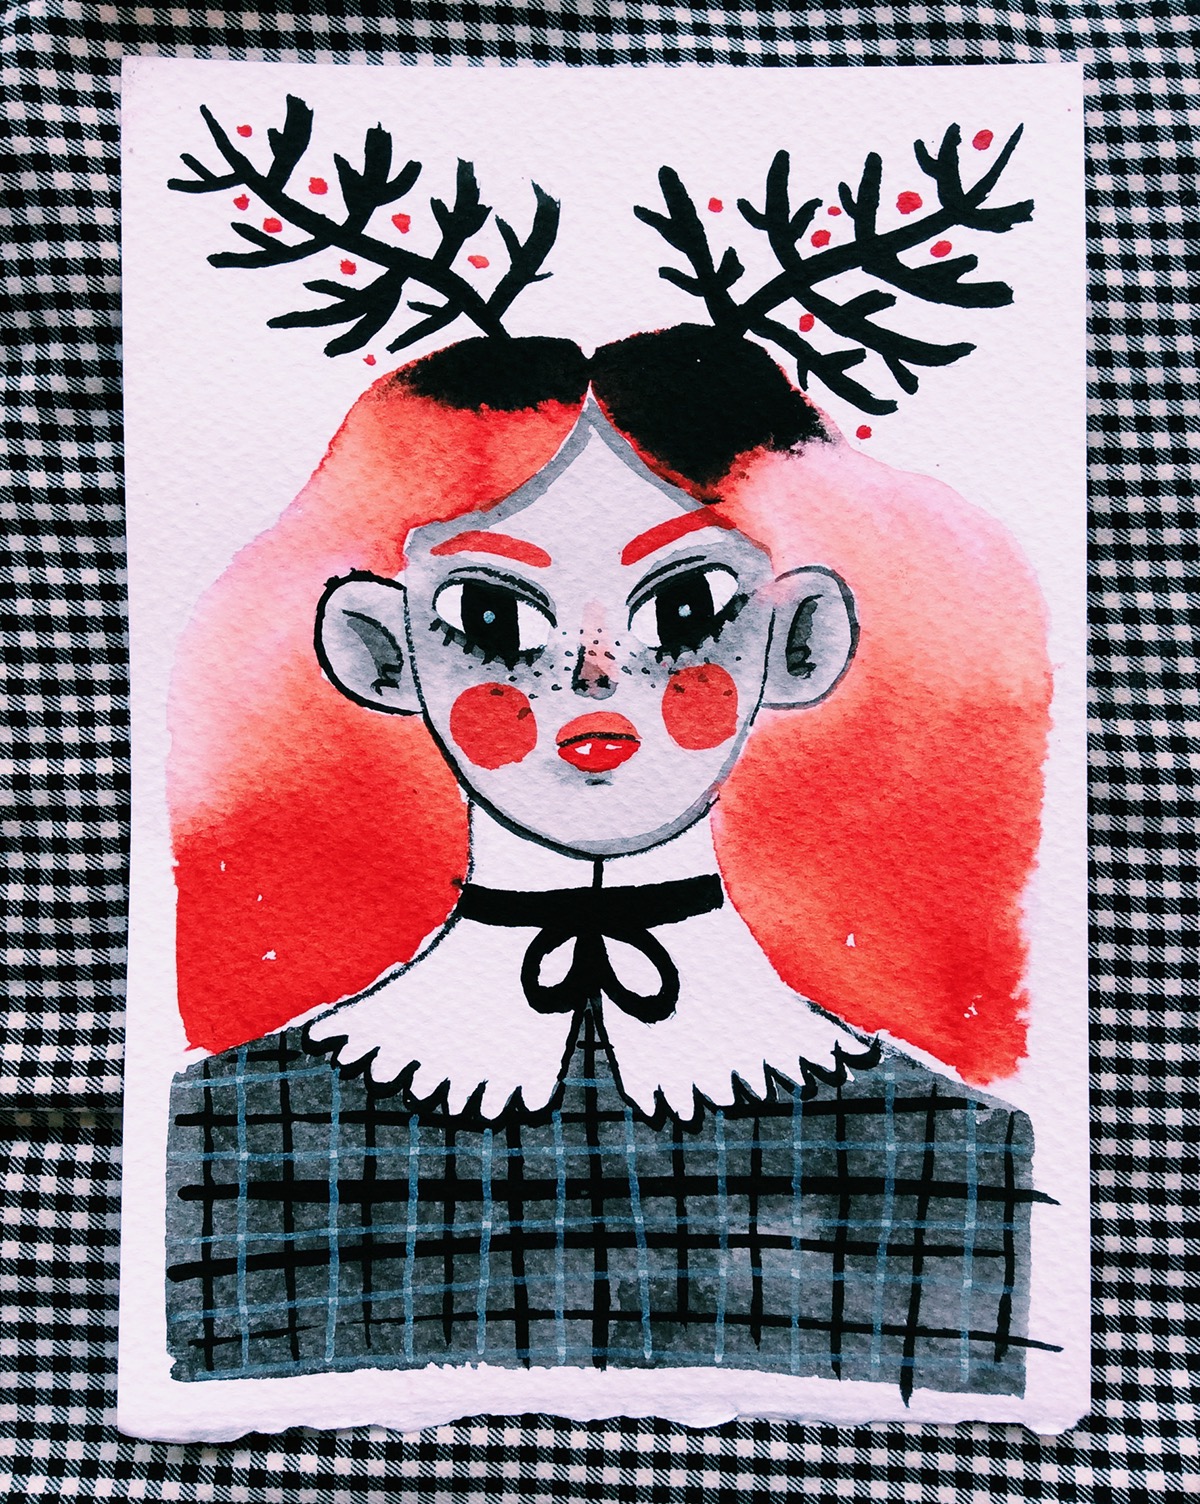 El Salvador ink gouache acrylic watercolor witch demon woman